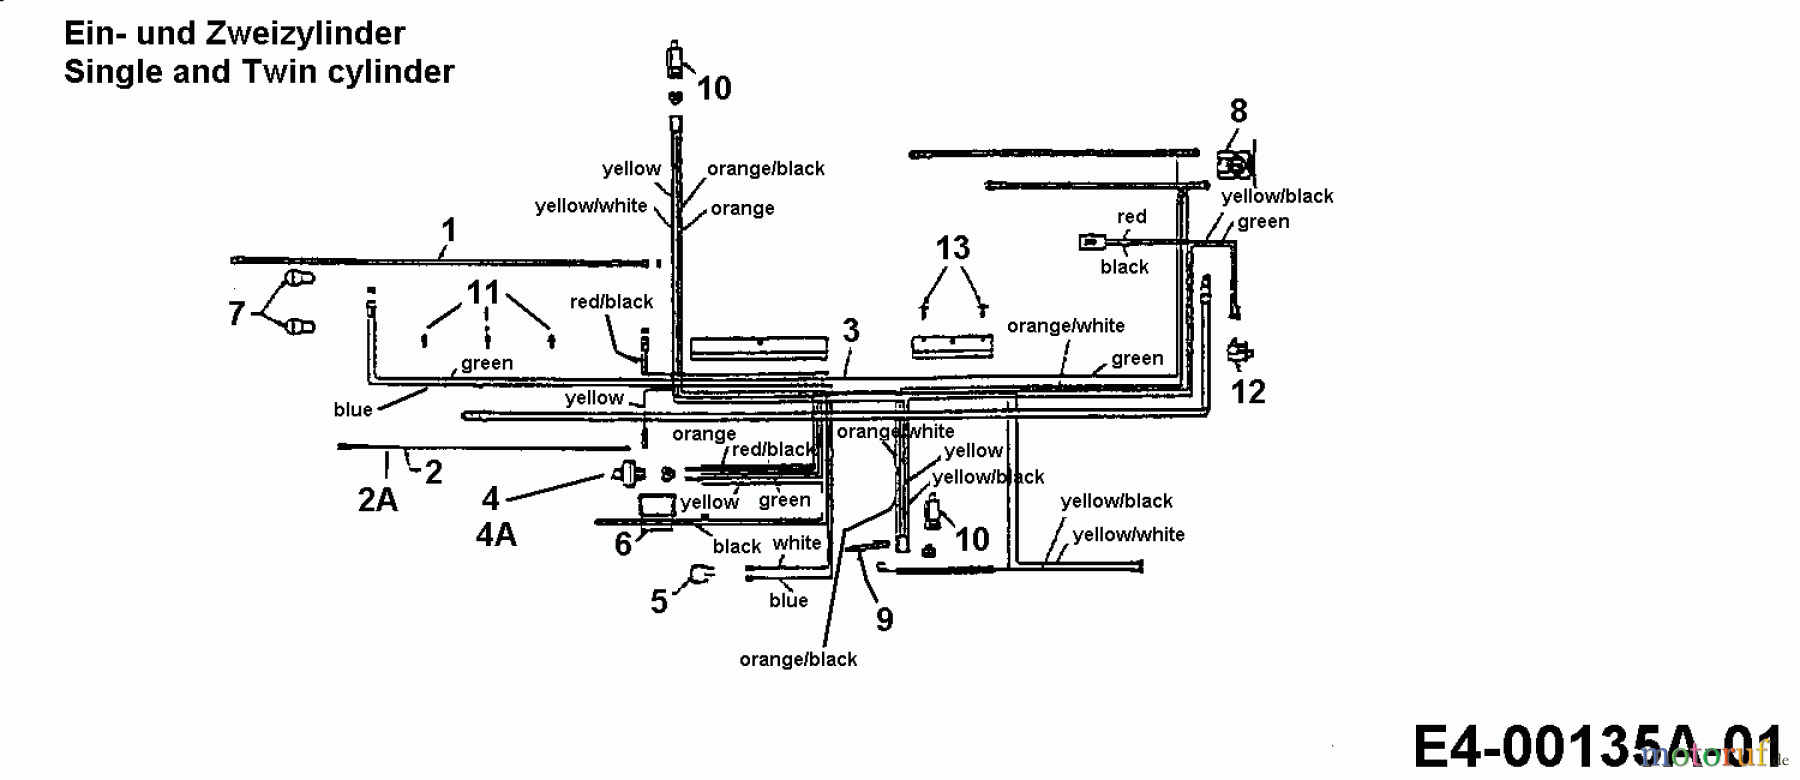  Brill Tracteurs de pelouse 13/102 136T767N629  (1996) Plan électrique pour moteur simple et deux cylindre